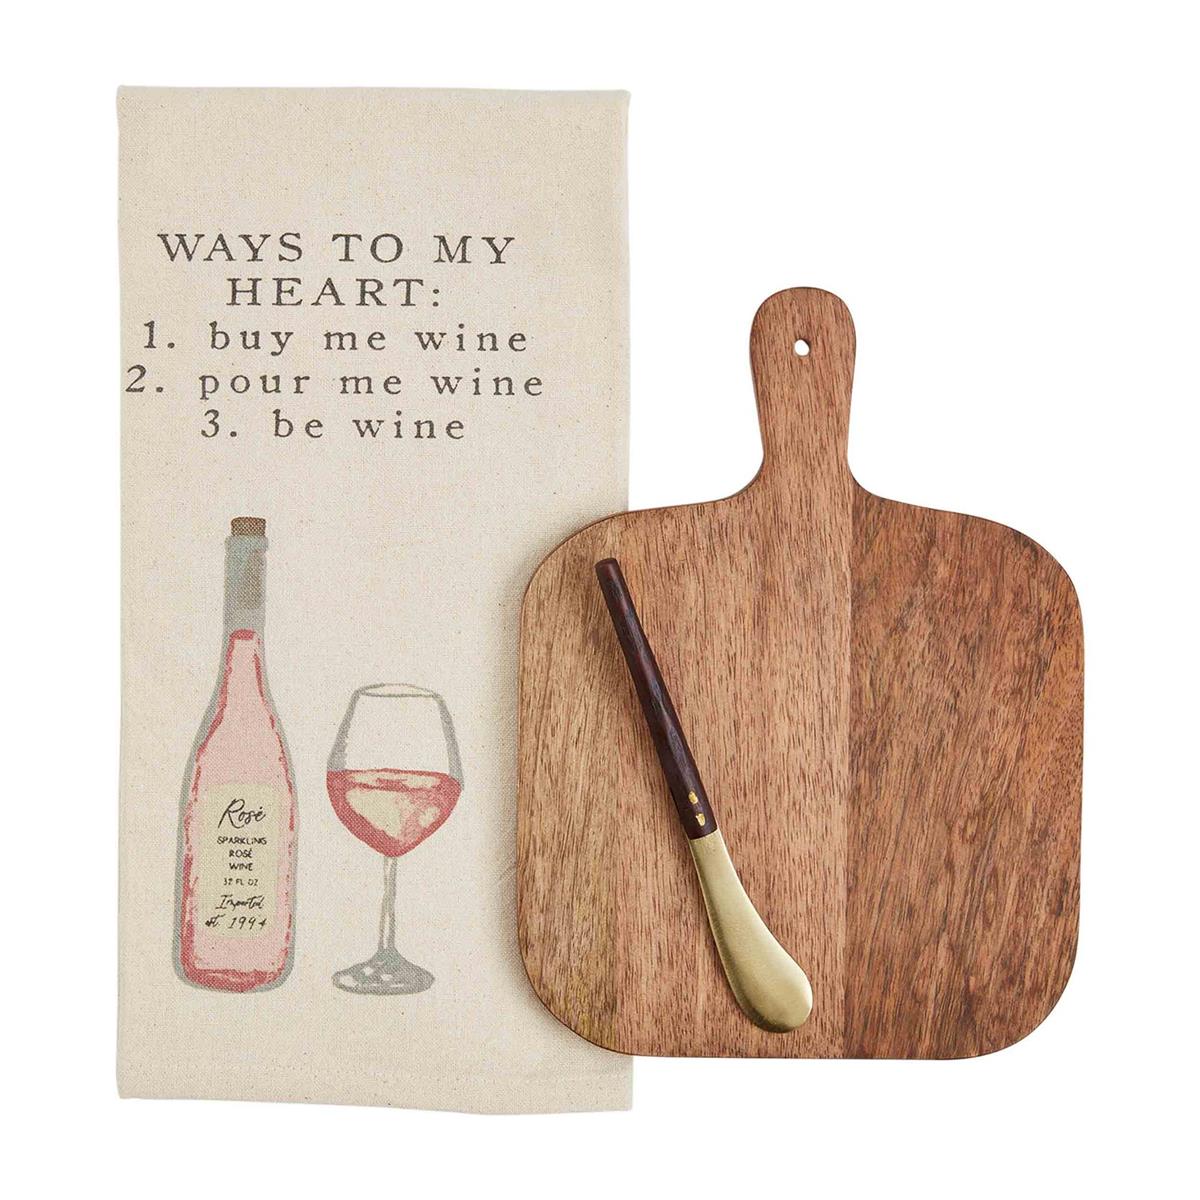 Wine board & towel set